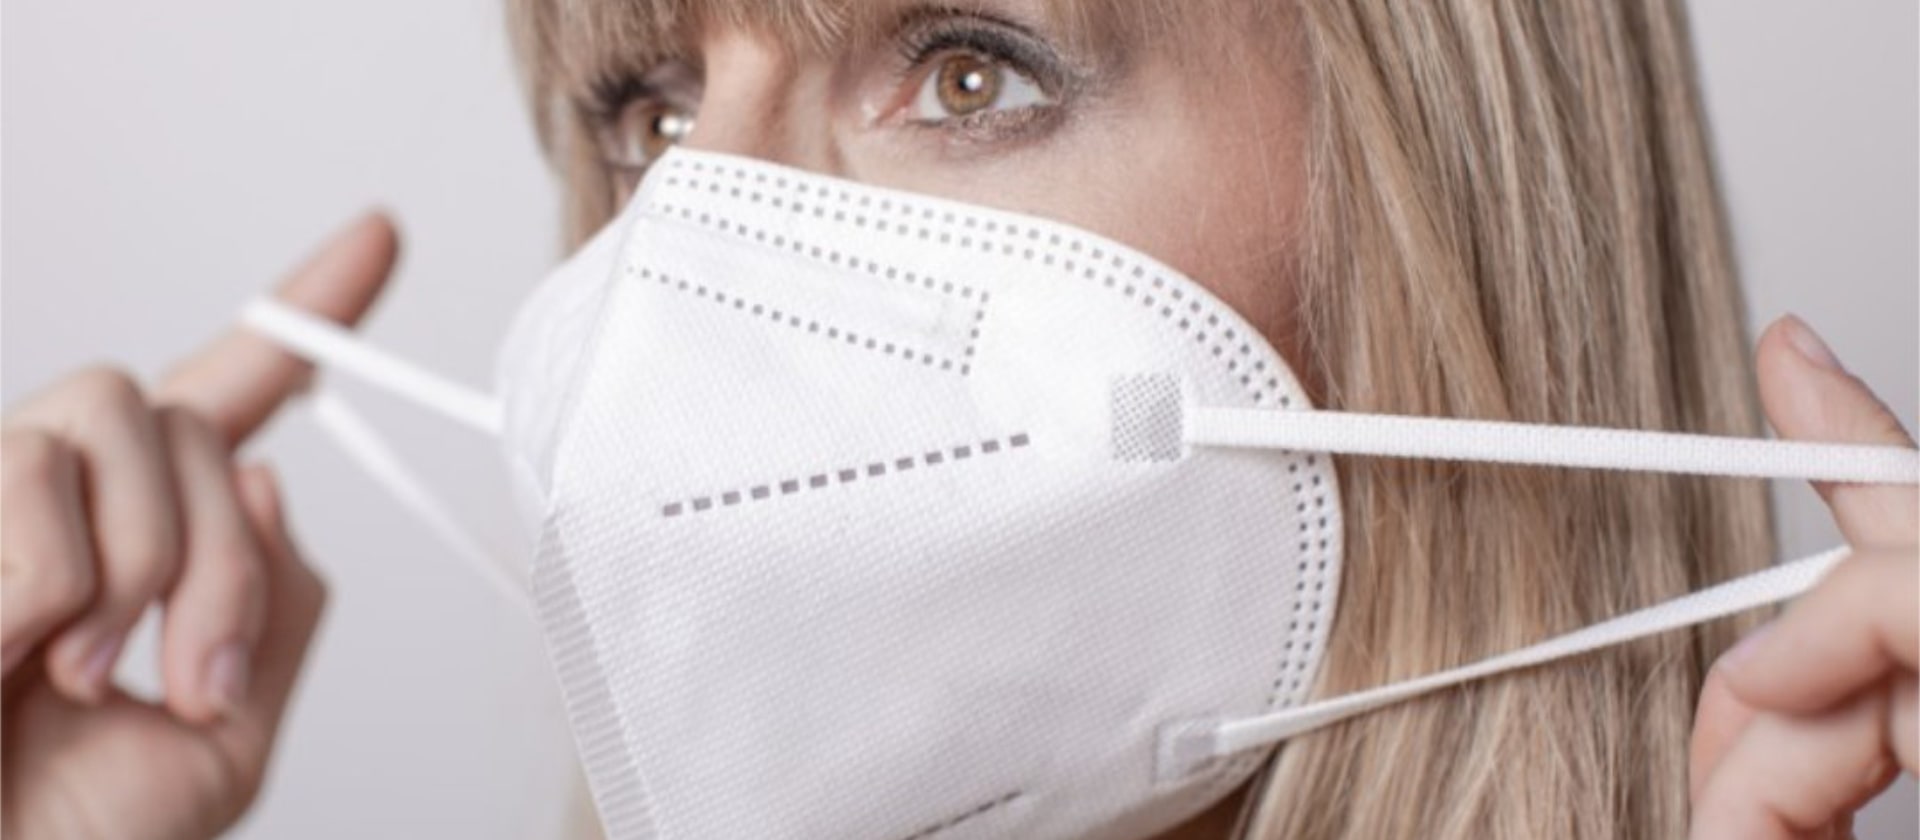 Eine blonde Frau verwendet eine FFP2-Maske, um sich gegen eine Corona-Infektion zu schützen.